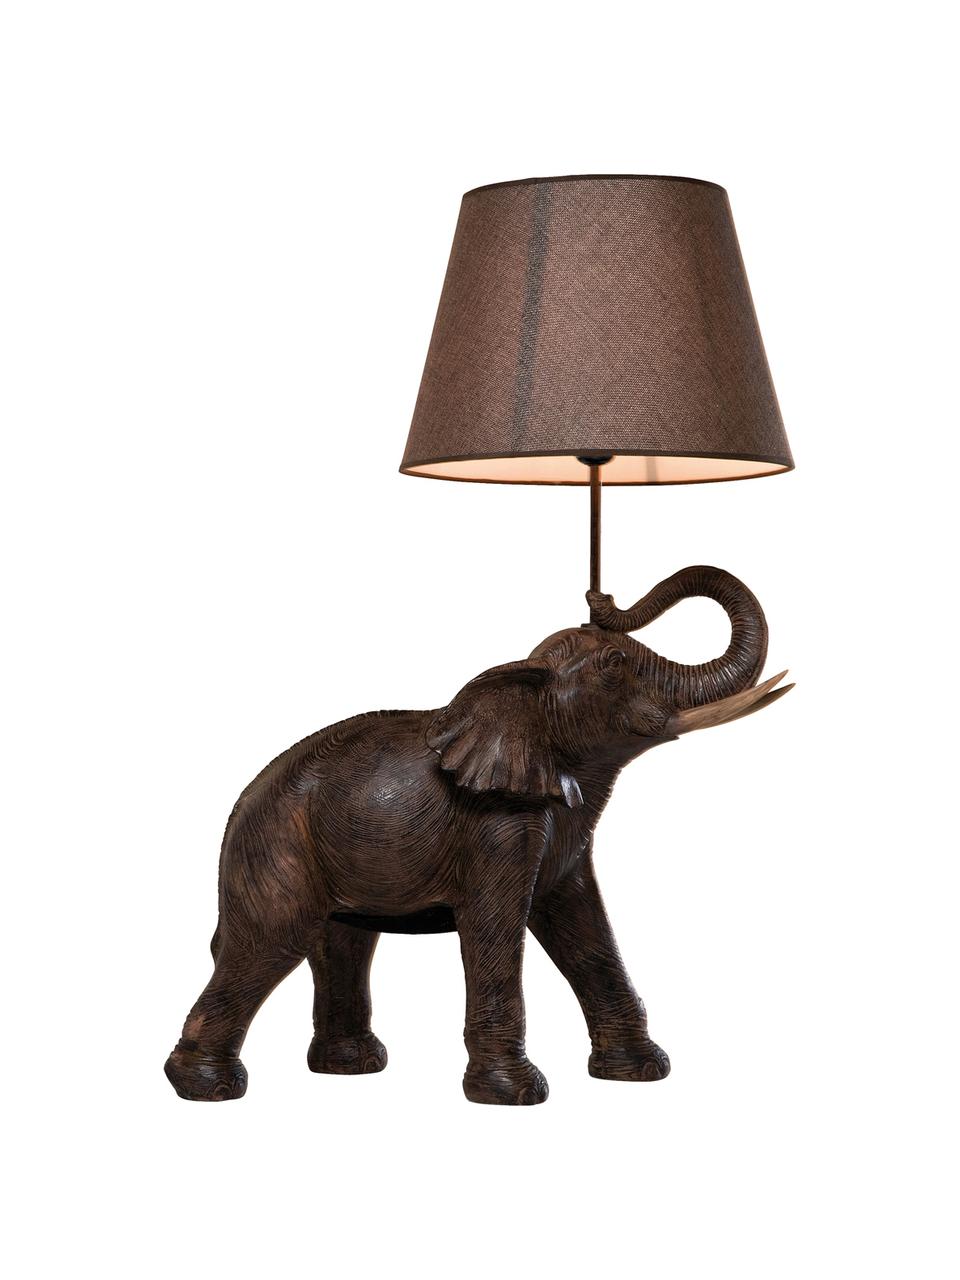 Große Boho-Tischlampe Elephant, Lampenschirm: Leinen, Lampenfuß: Polyresin, Stange: Stahl, pulverbeschichtet, Taupe, Braun, 52 x 74 cm